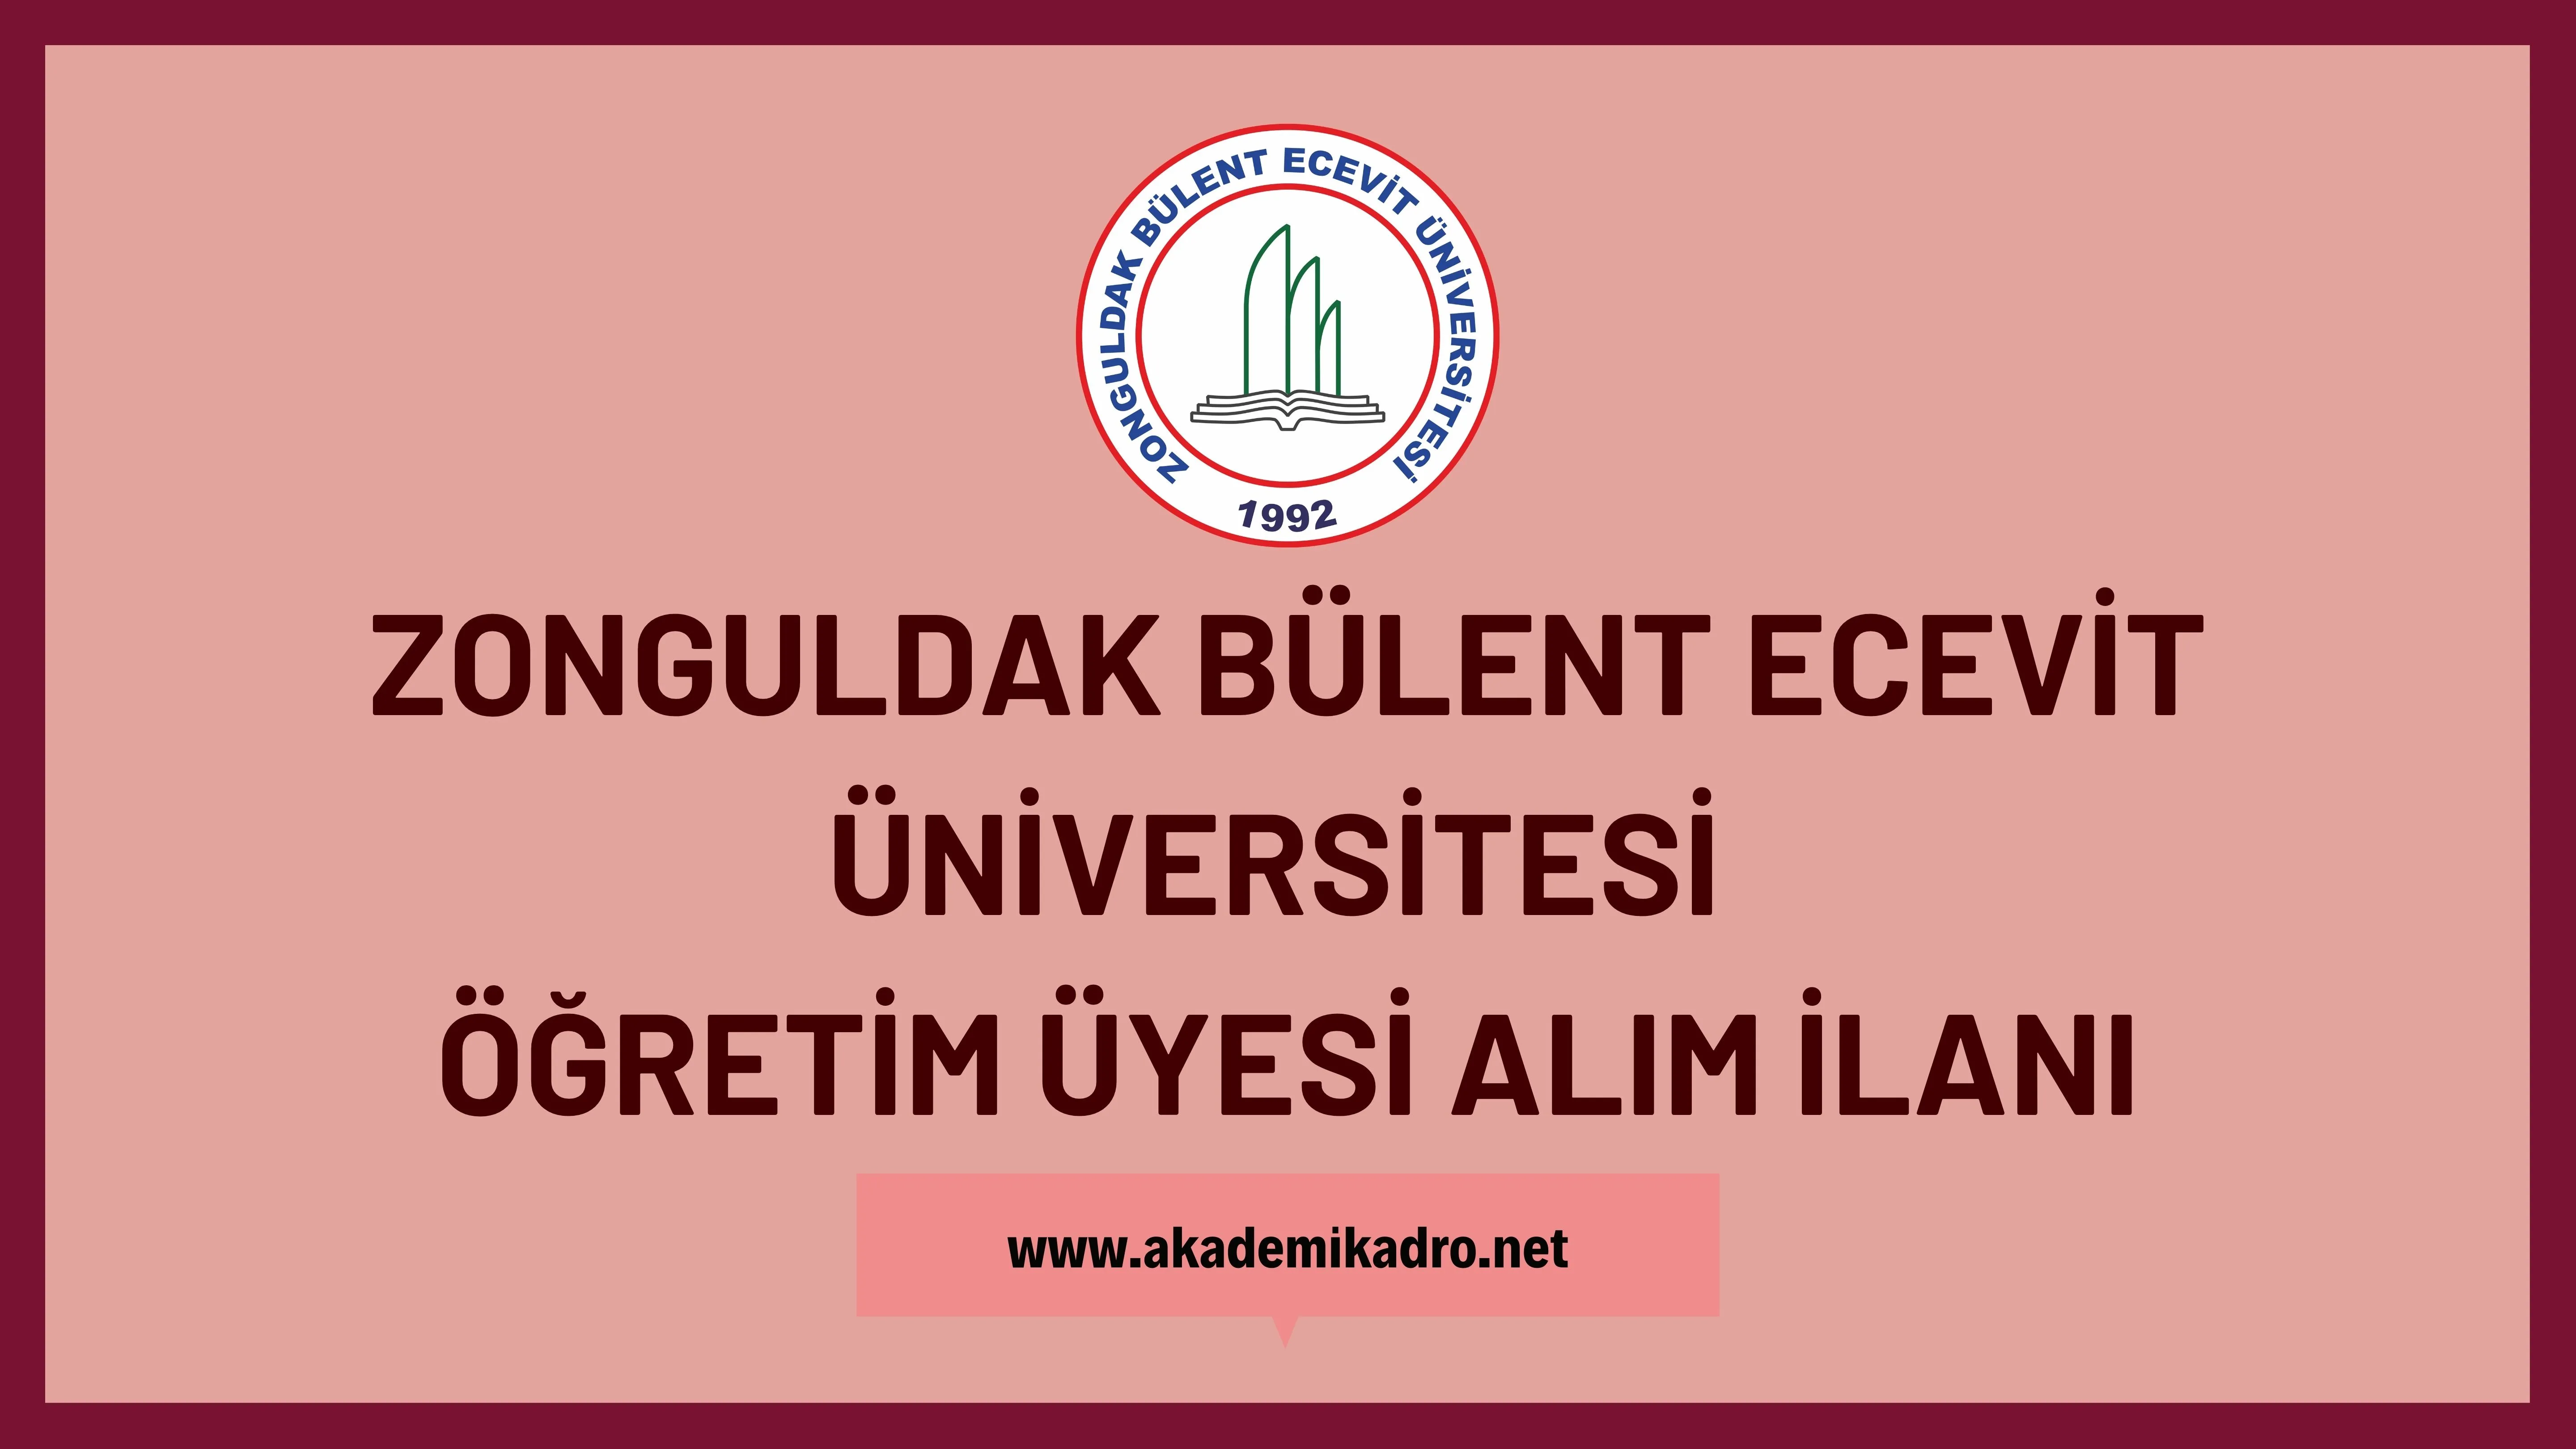 Zonguldak Bülent Ecevit Üniversitesi birçok alandan 66 öğretim üyesi alacak.